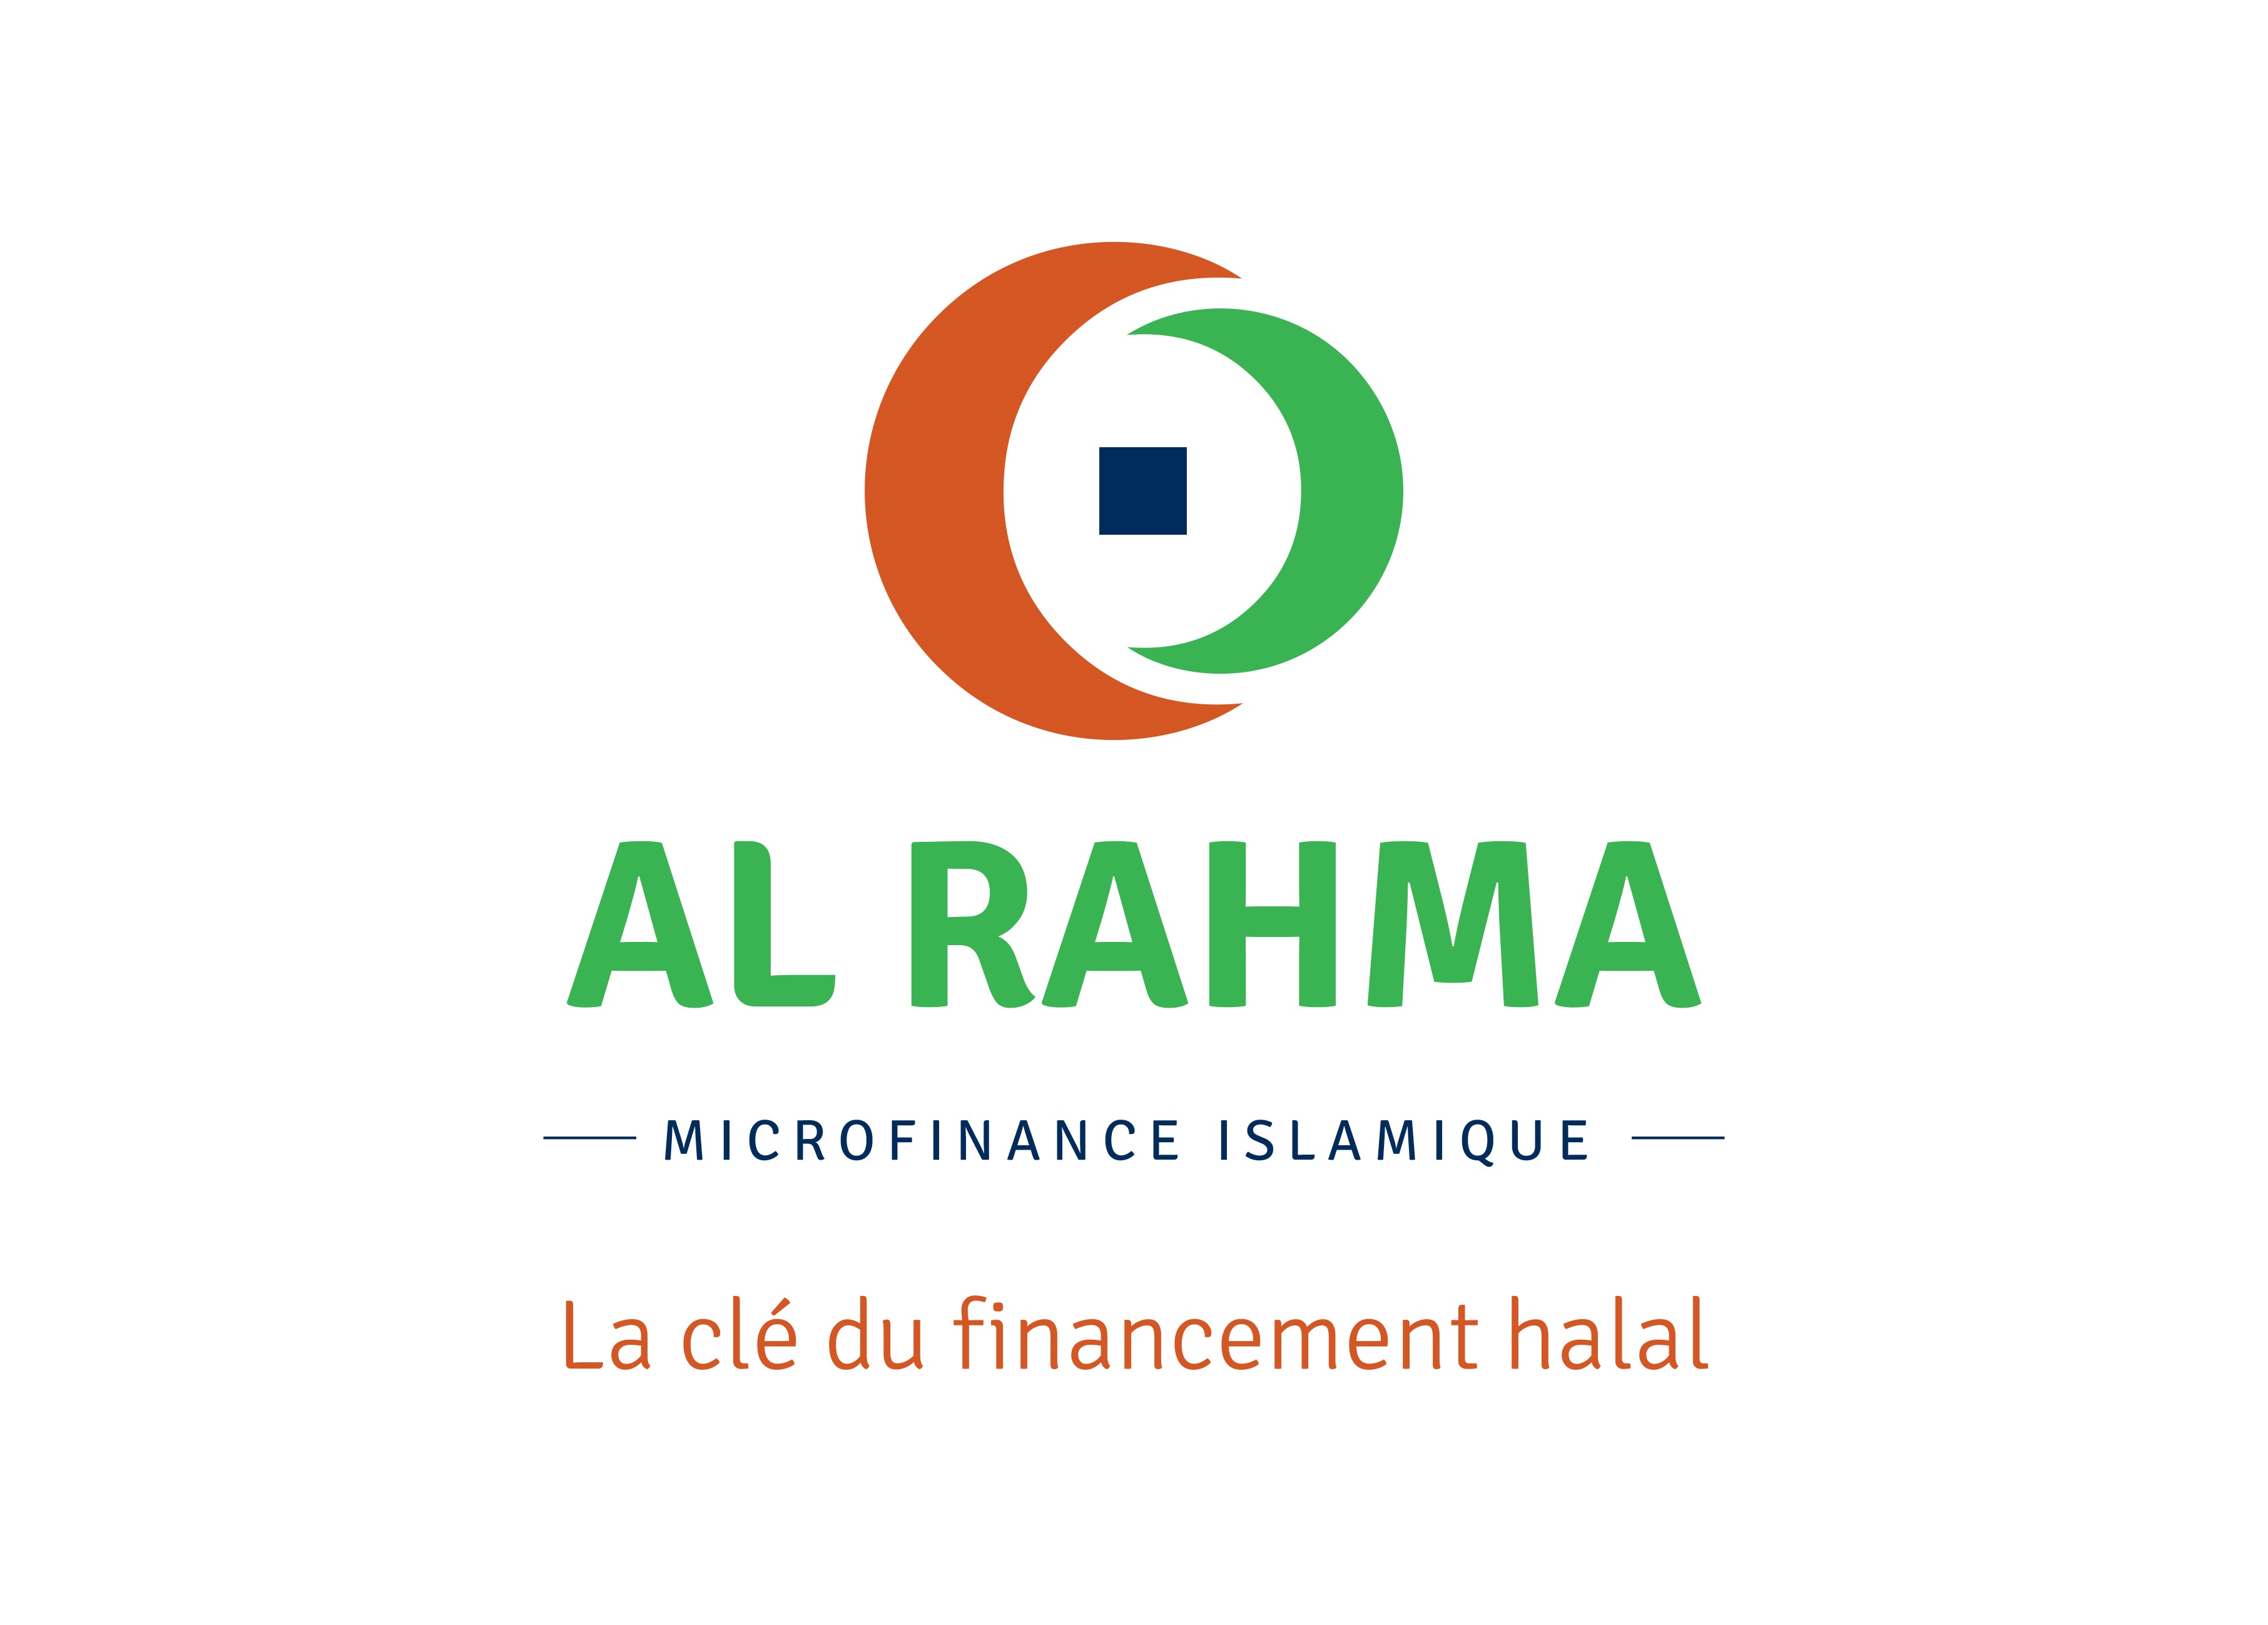 Microfinance Islamique : AL RAHMA Microfinance Islamique obtient son agrément